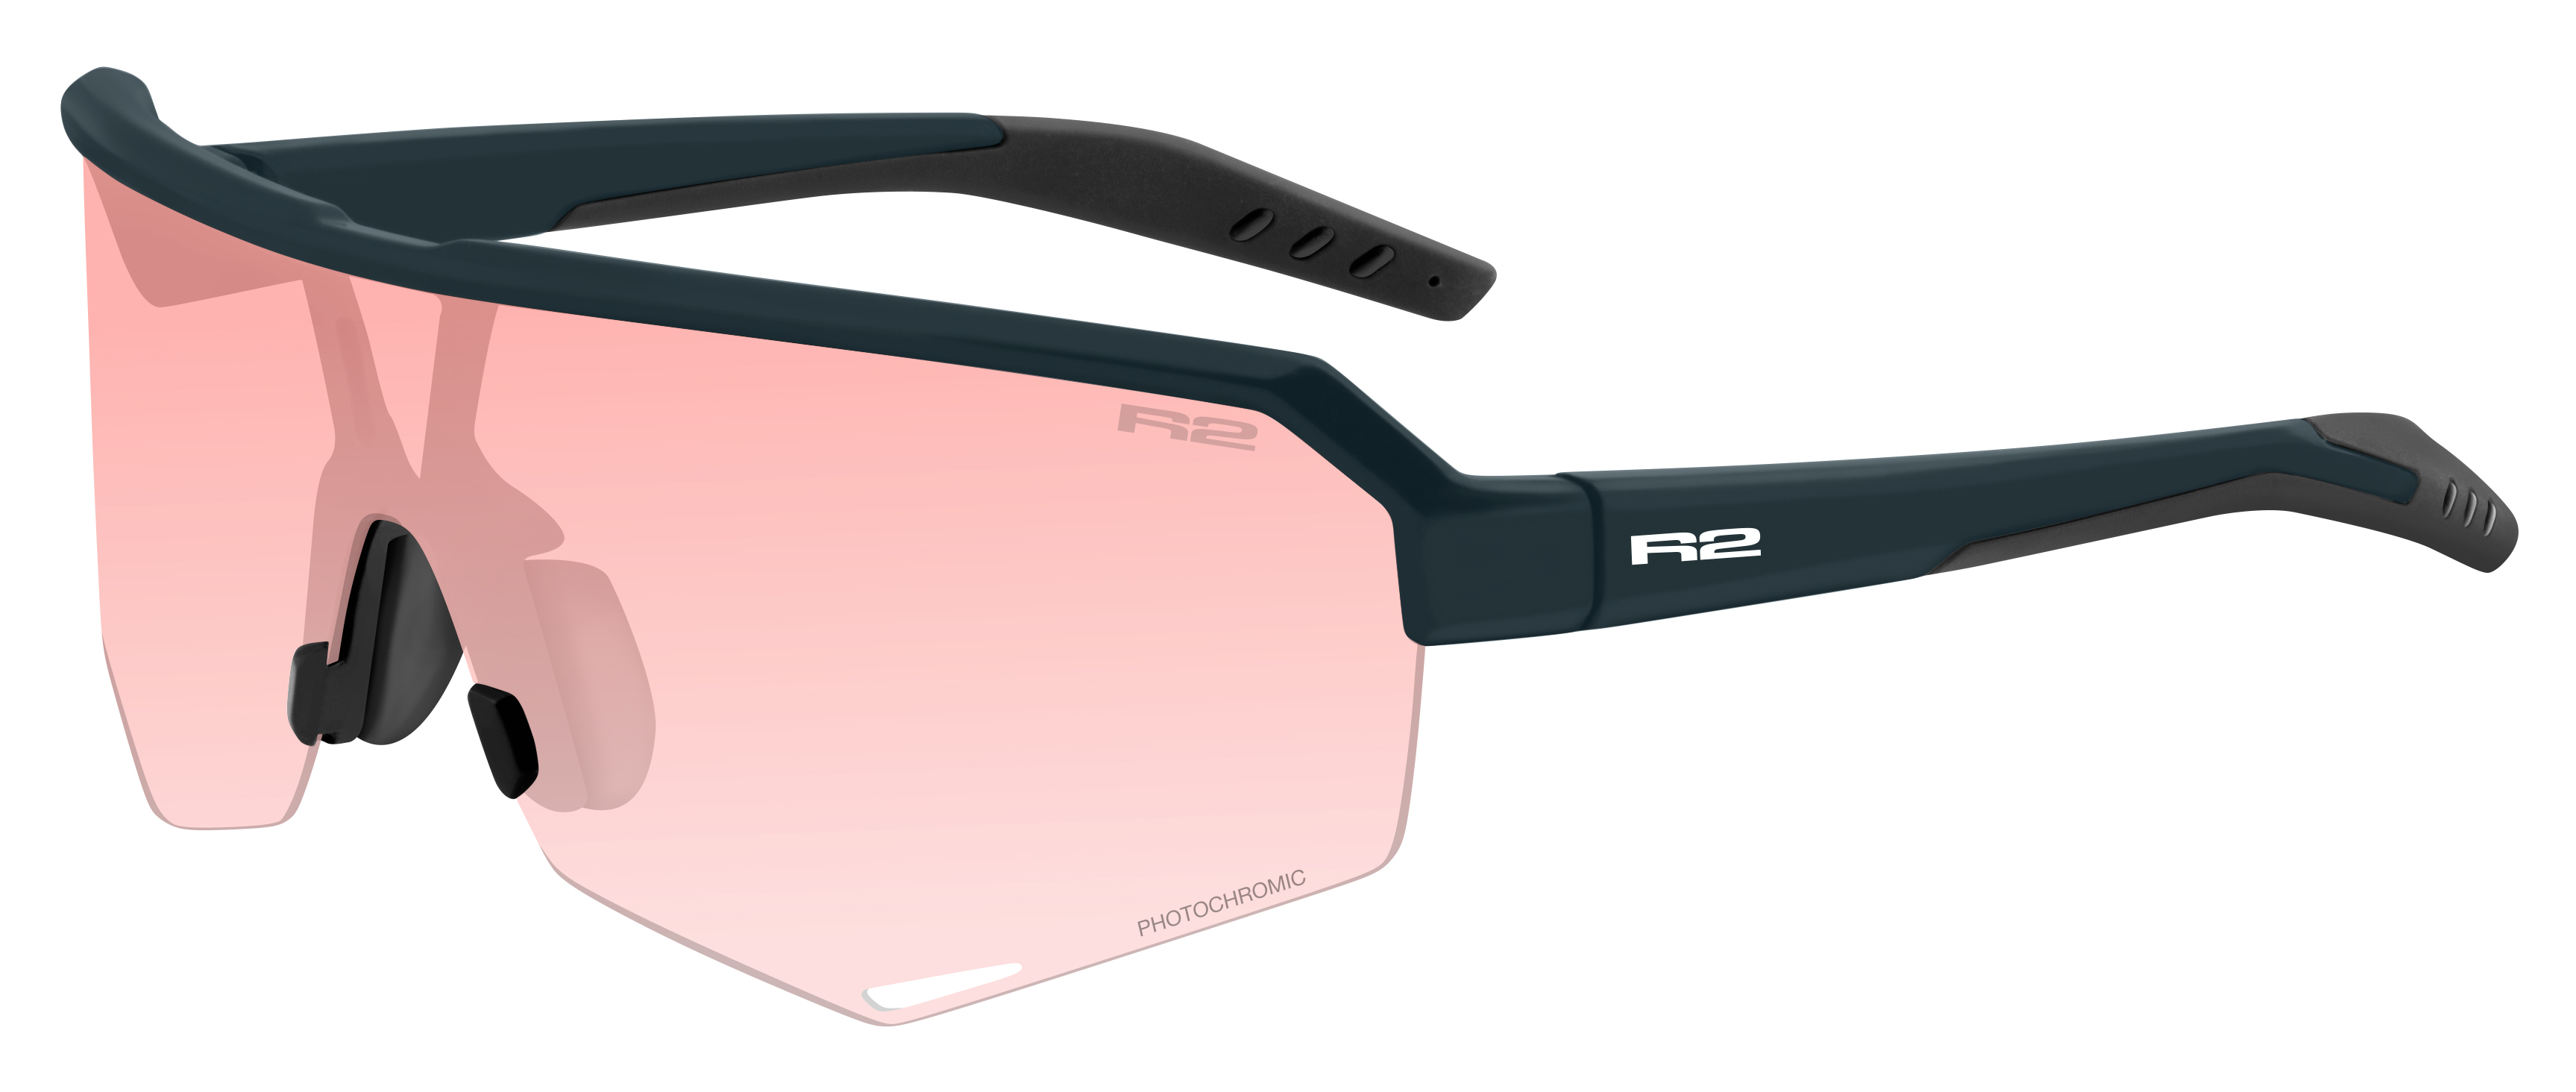 Brýle R2 Fluke AT100J černé/růžové fotochromatické